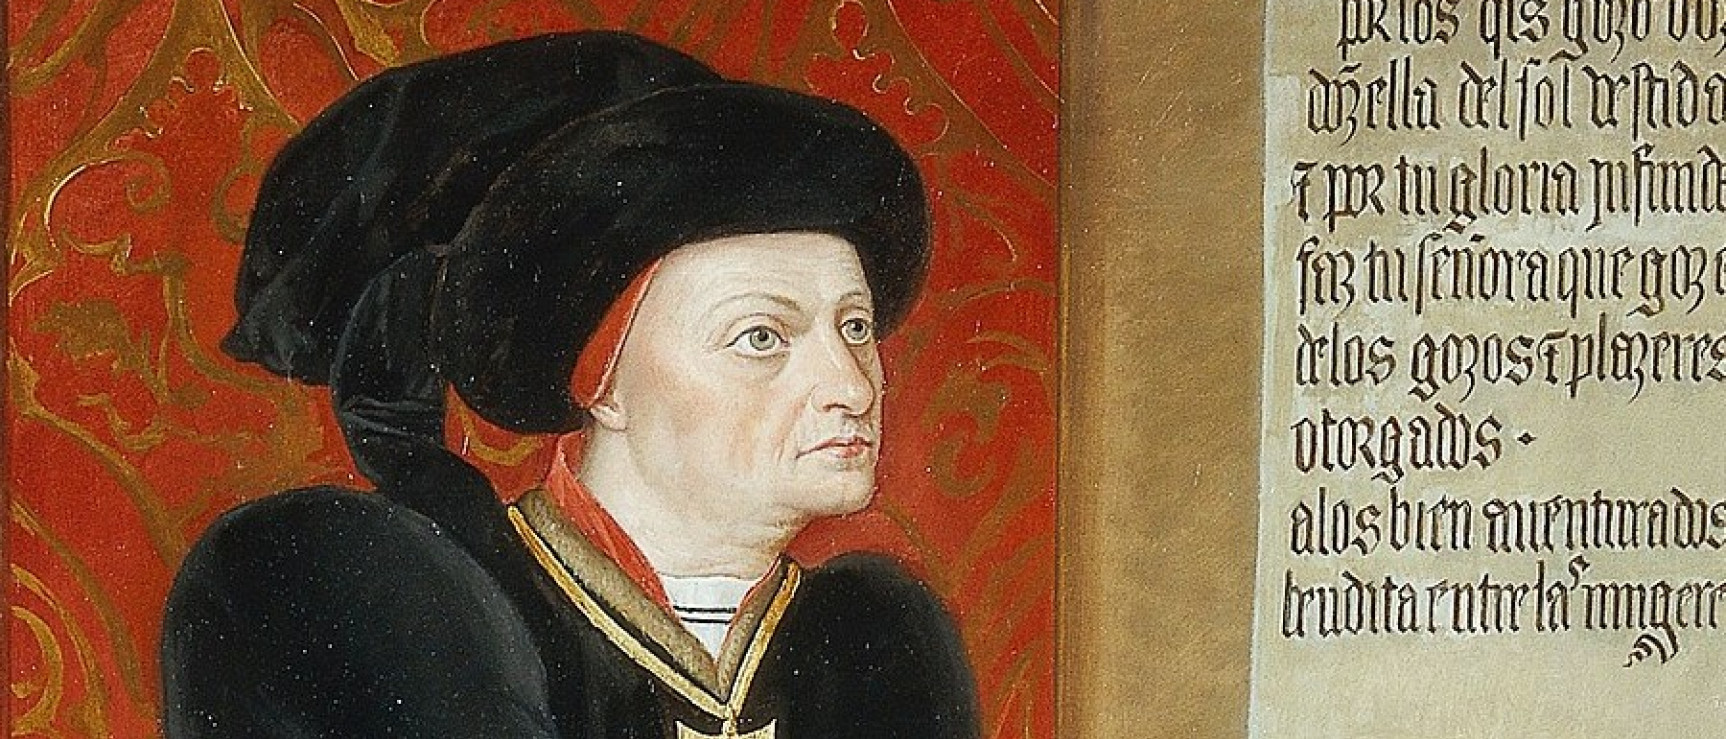 Retrato del marqués de Santillana, copia de Gabriel Maureta (Wikipedia)